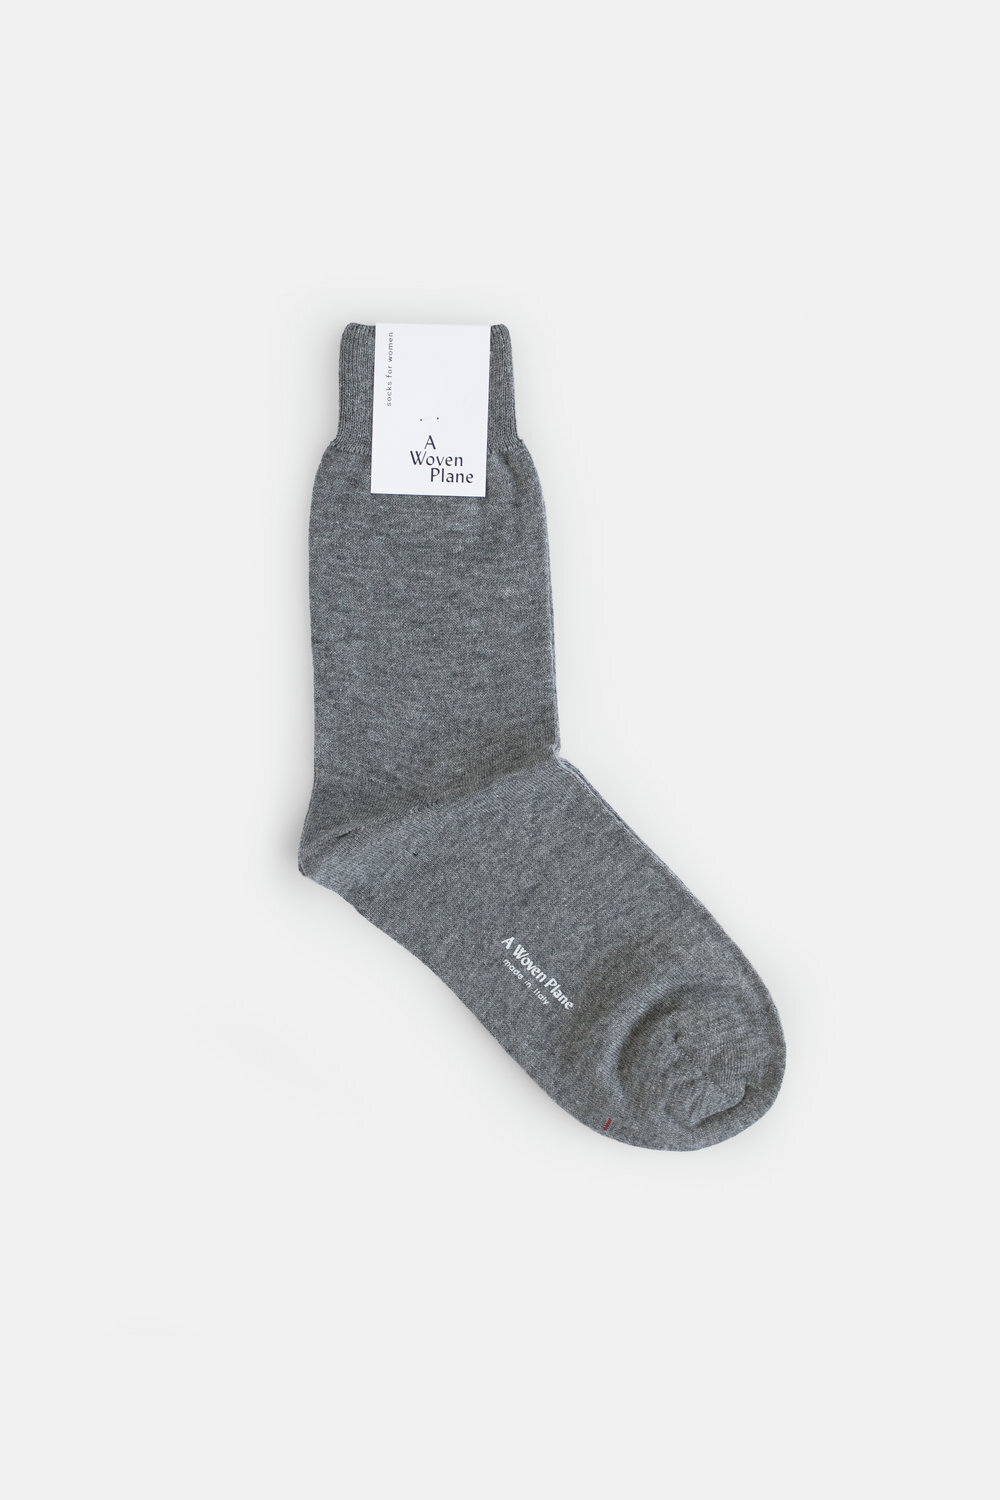 A Woven Plane Socks - Oatmeal — Nadinoo